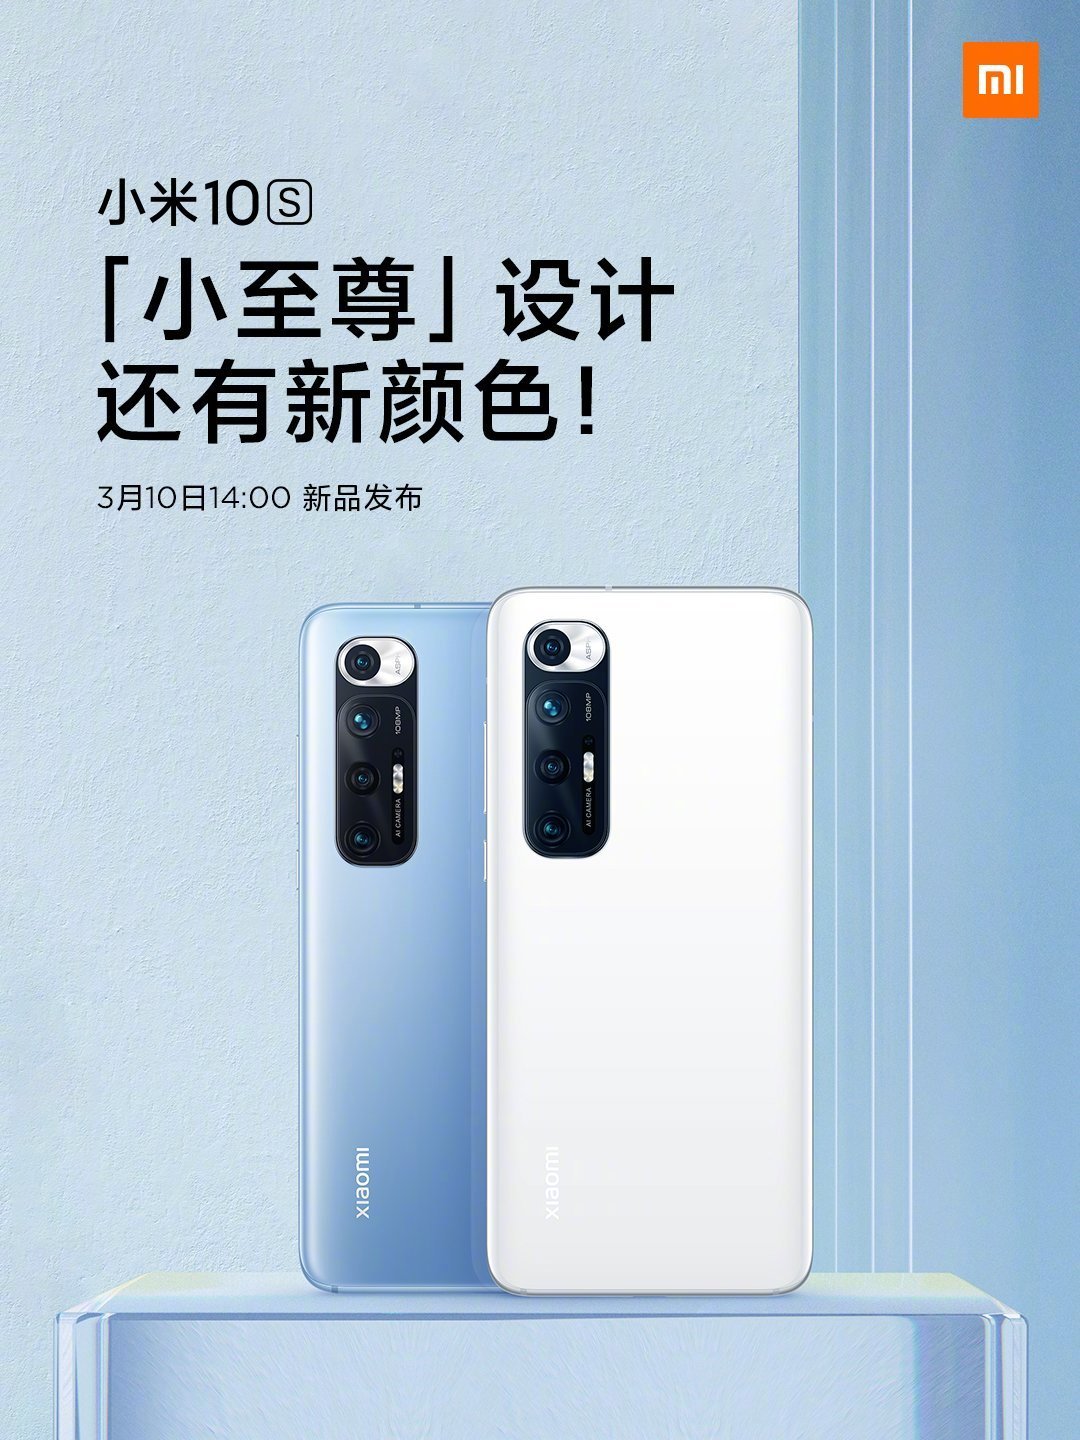 Cartaz da data de lançamento do Xiaomi Mi 10S -